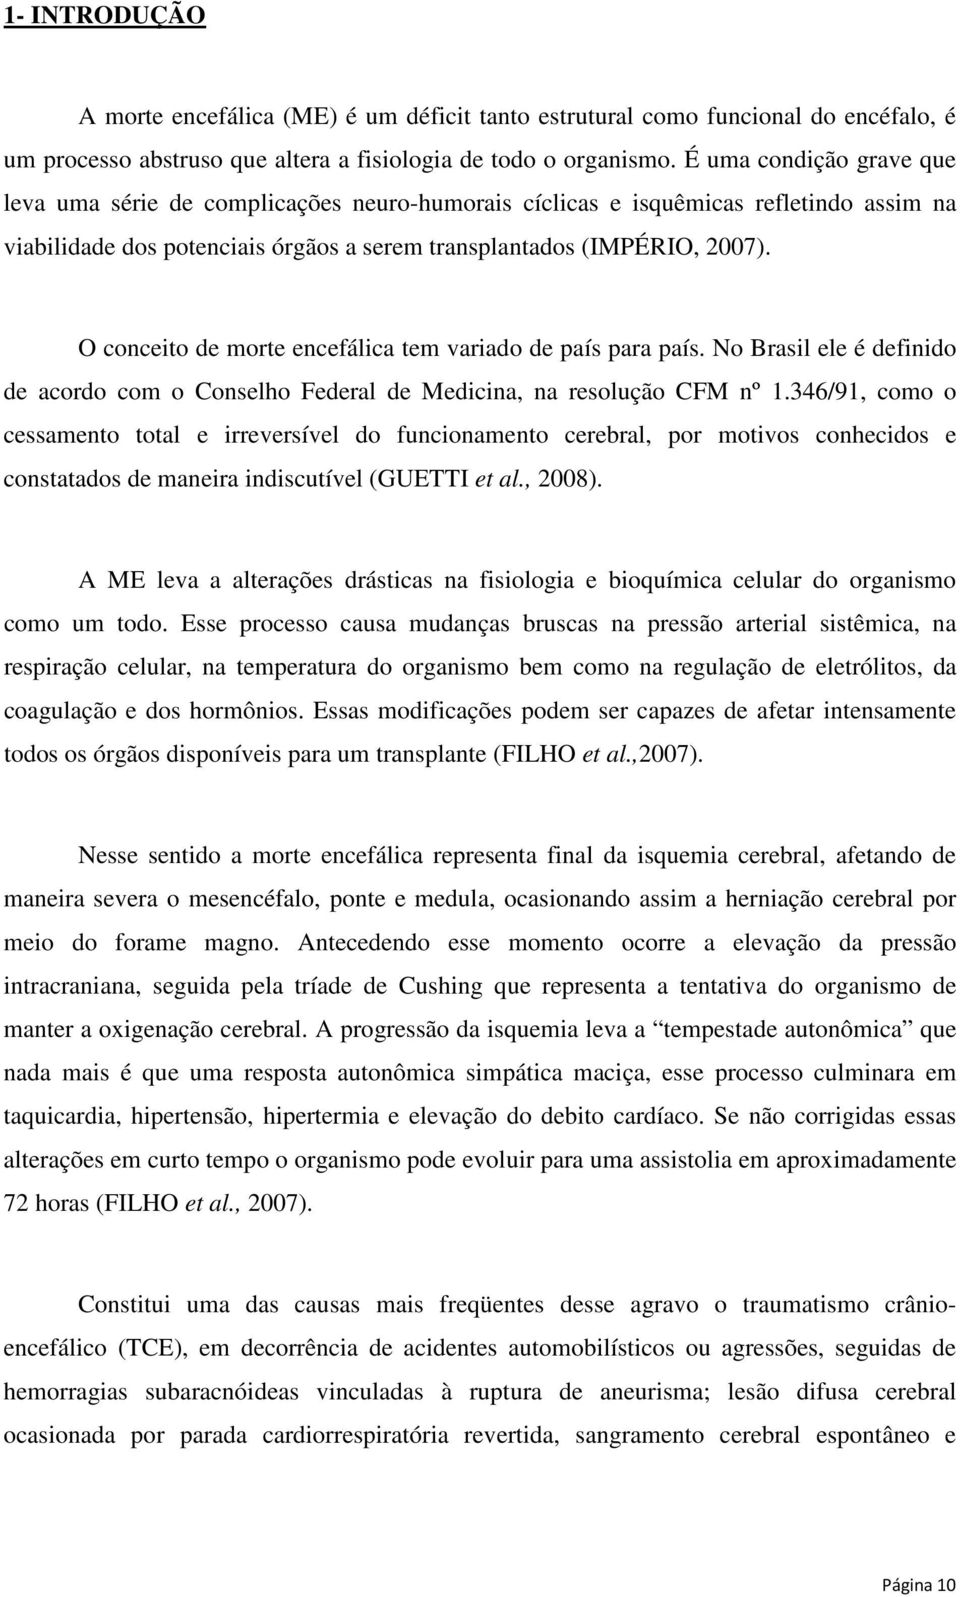 O conceito de morte encefálica tem variado de país para país. No Brasil ele é definido de acordo com o Conselho Federal de Medicina, na resolução CFM nº 1.